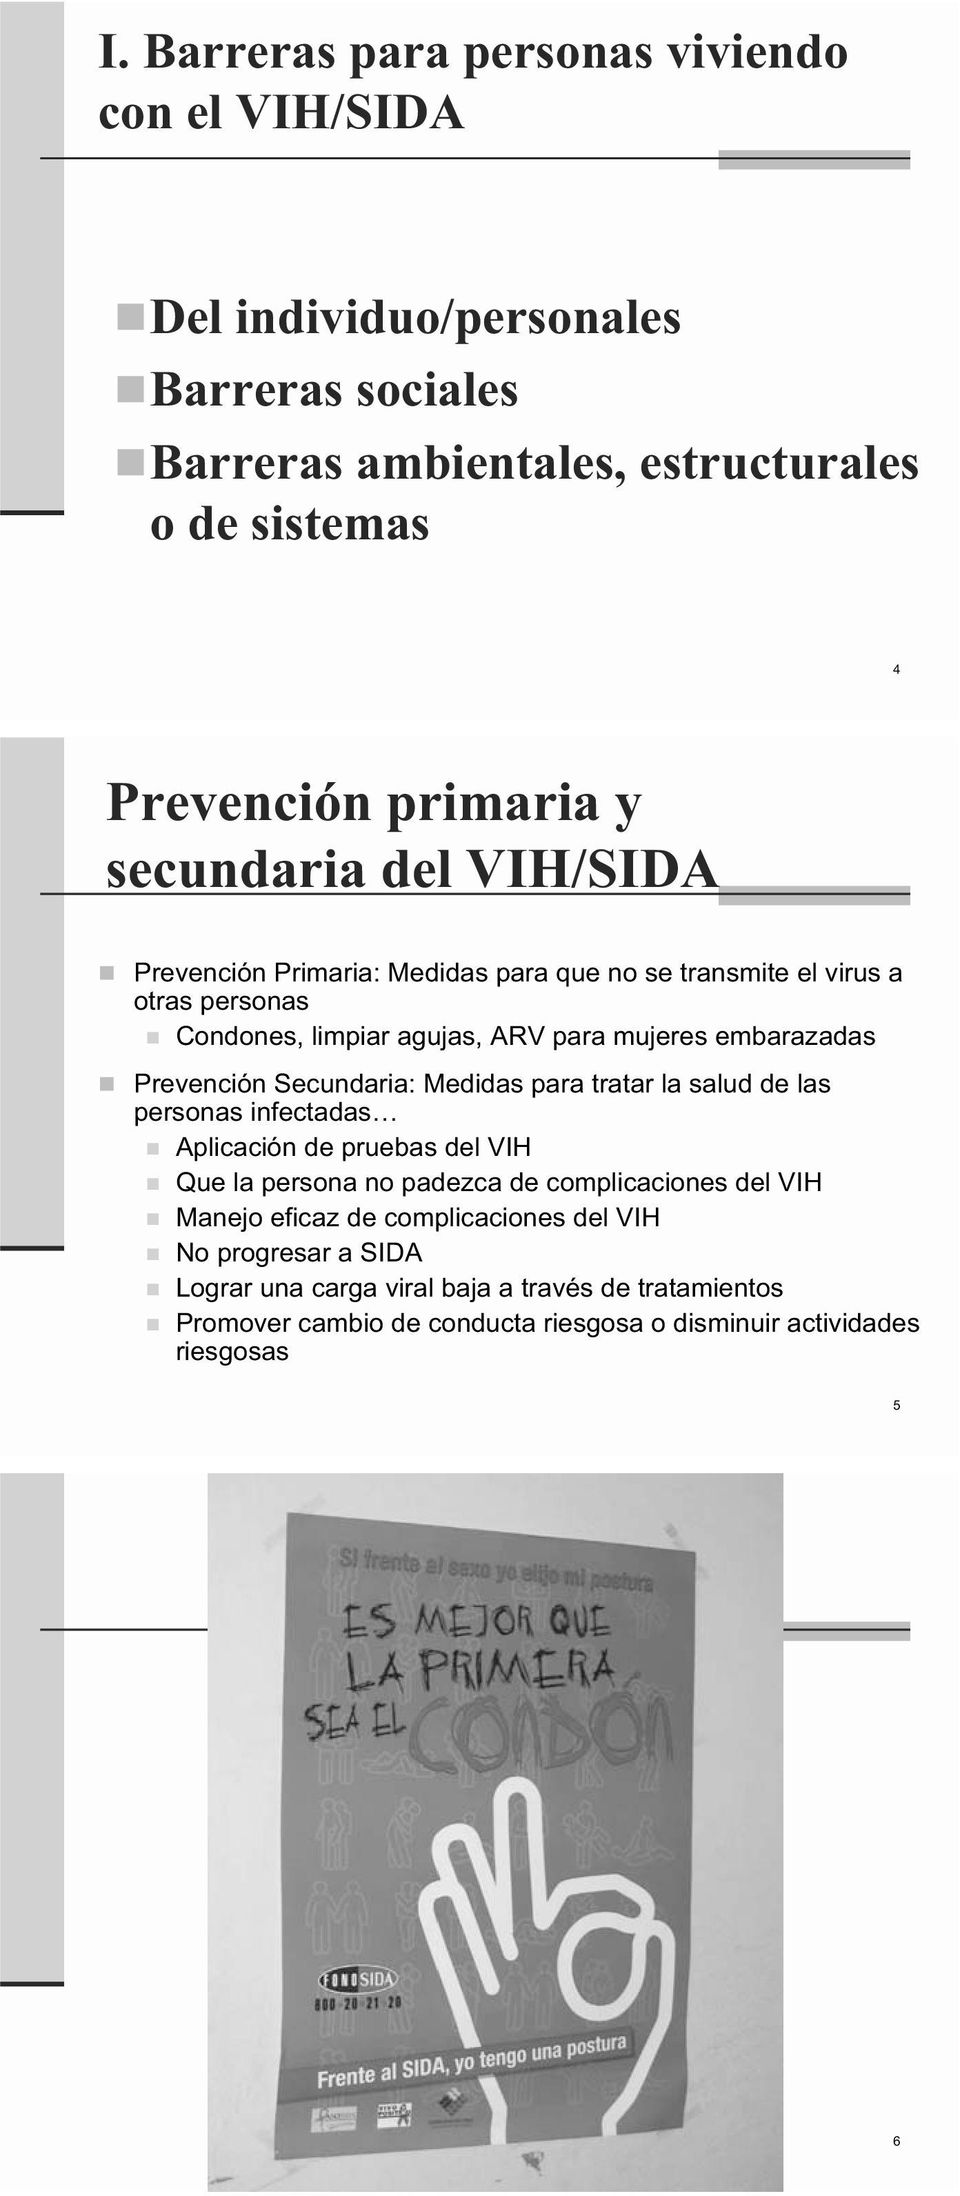 Prevención Secundaria: Medidas para tratar la salud de las personas infectadas Aplicación de pruebas del VIH Que la persona no padezca de complicaciones del VIH Manejo